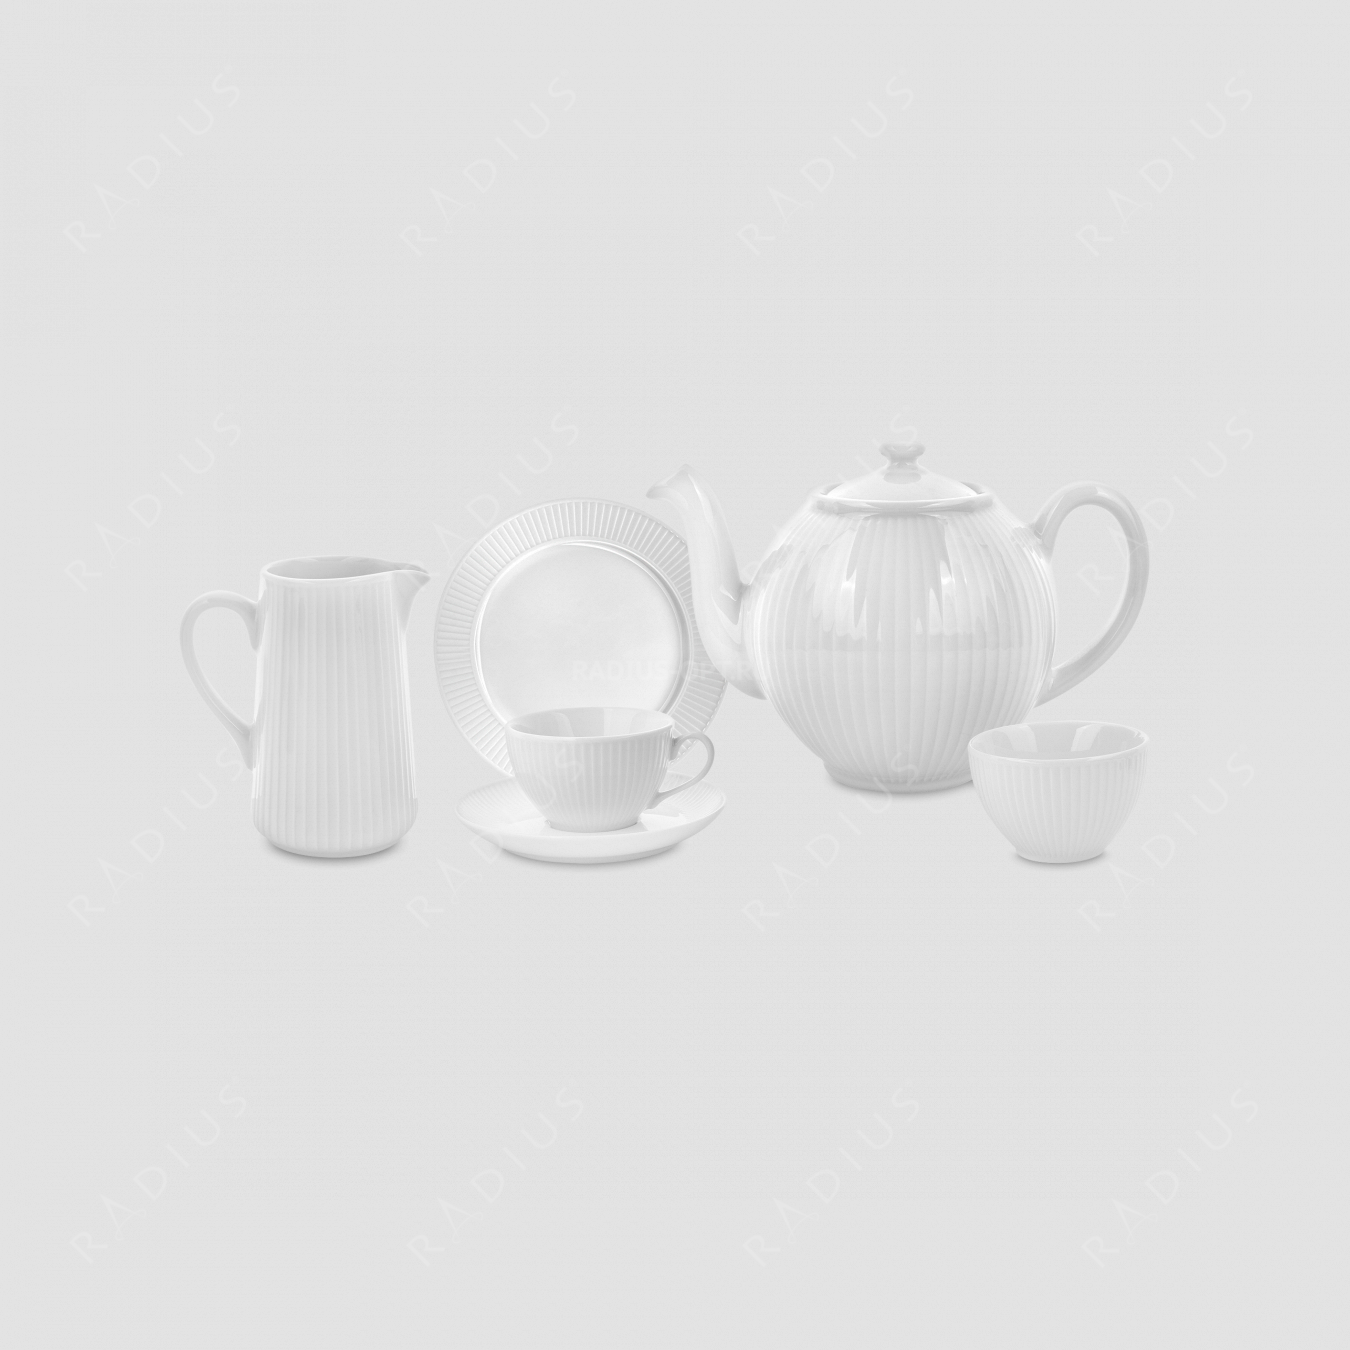 Сервиз чайный на 6 персон, 15 предметов, фарфор, белый, серия Plisse, PILLIVUYT, Франция